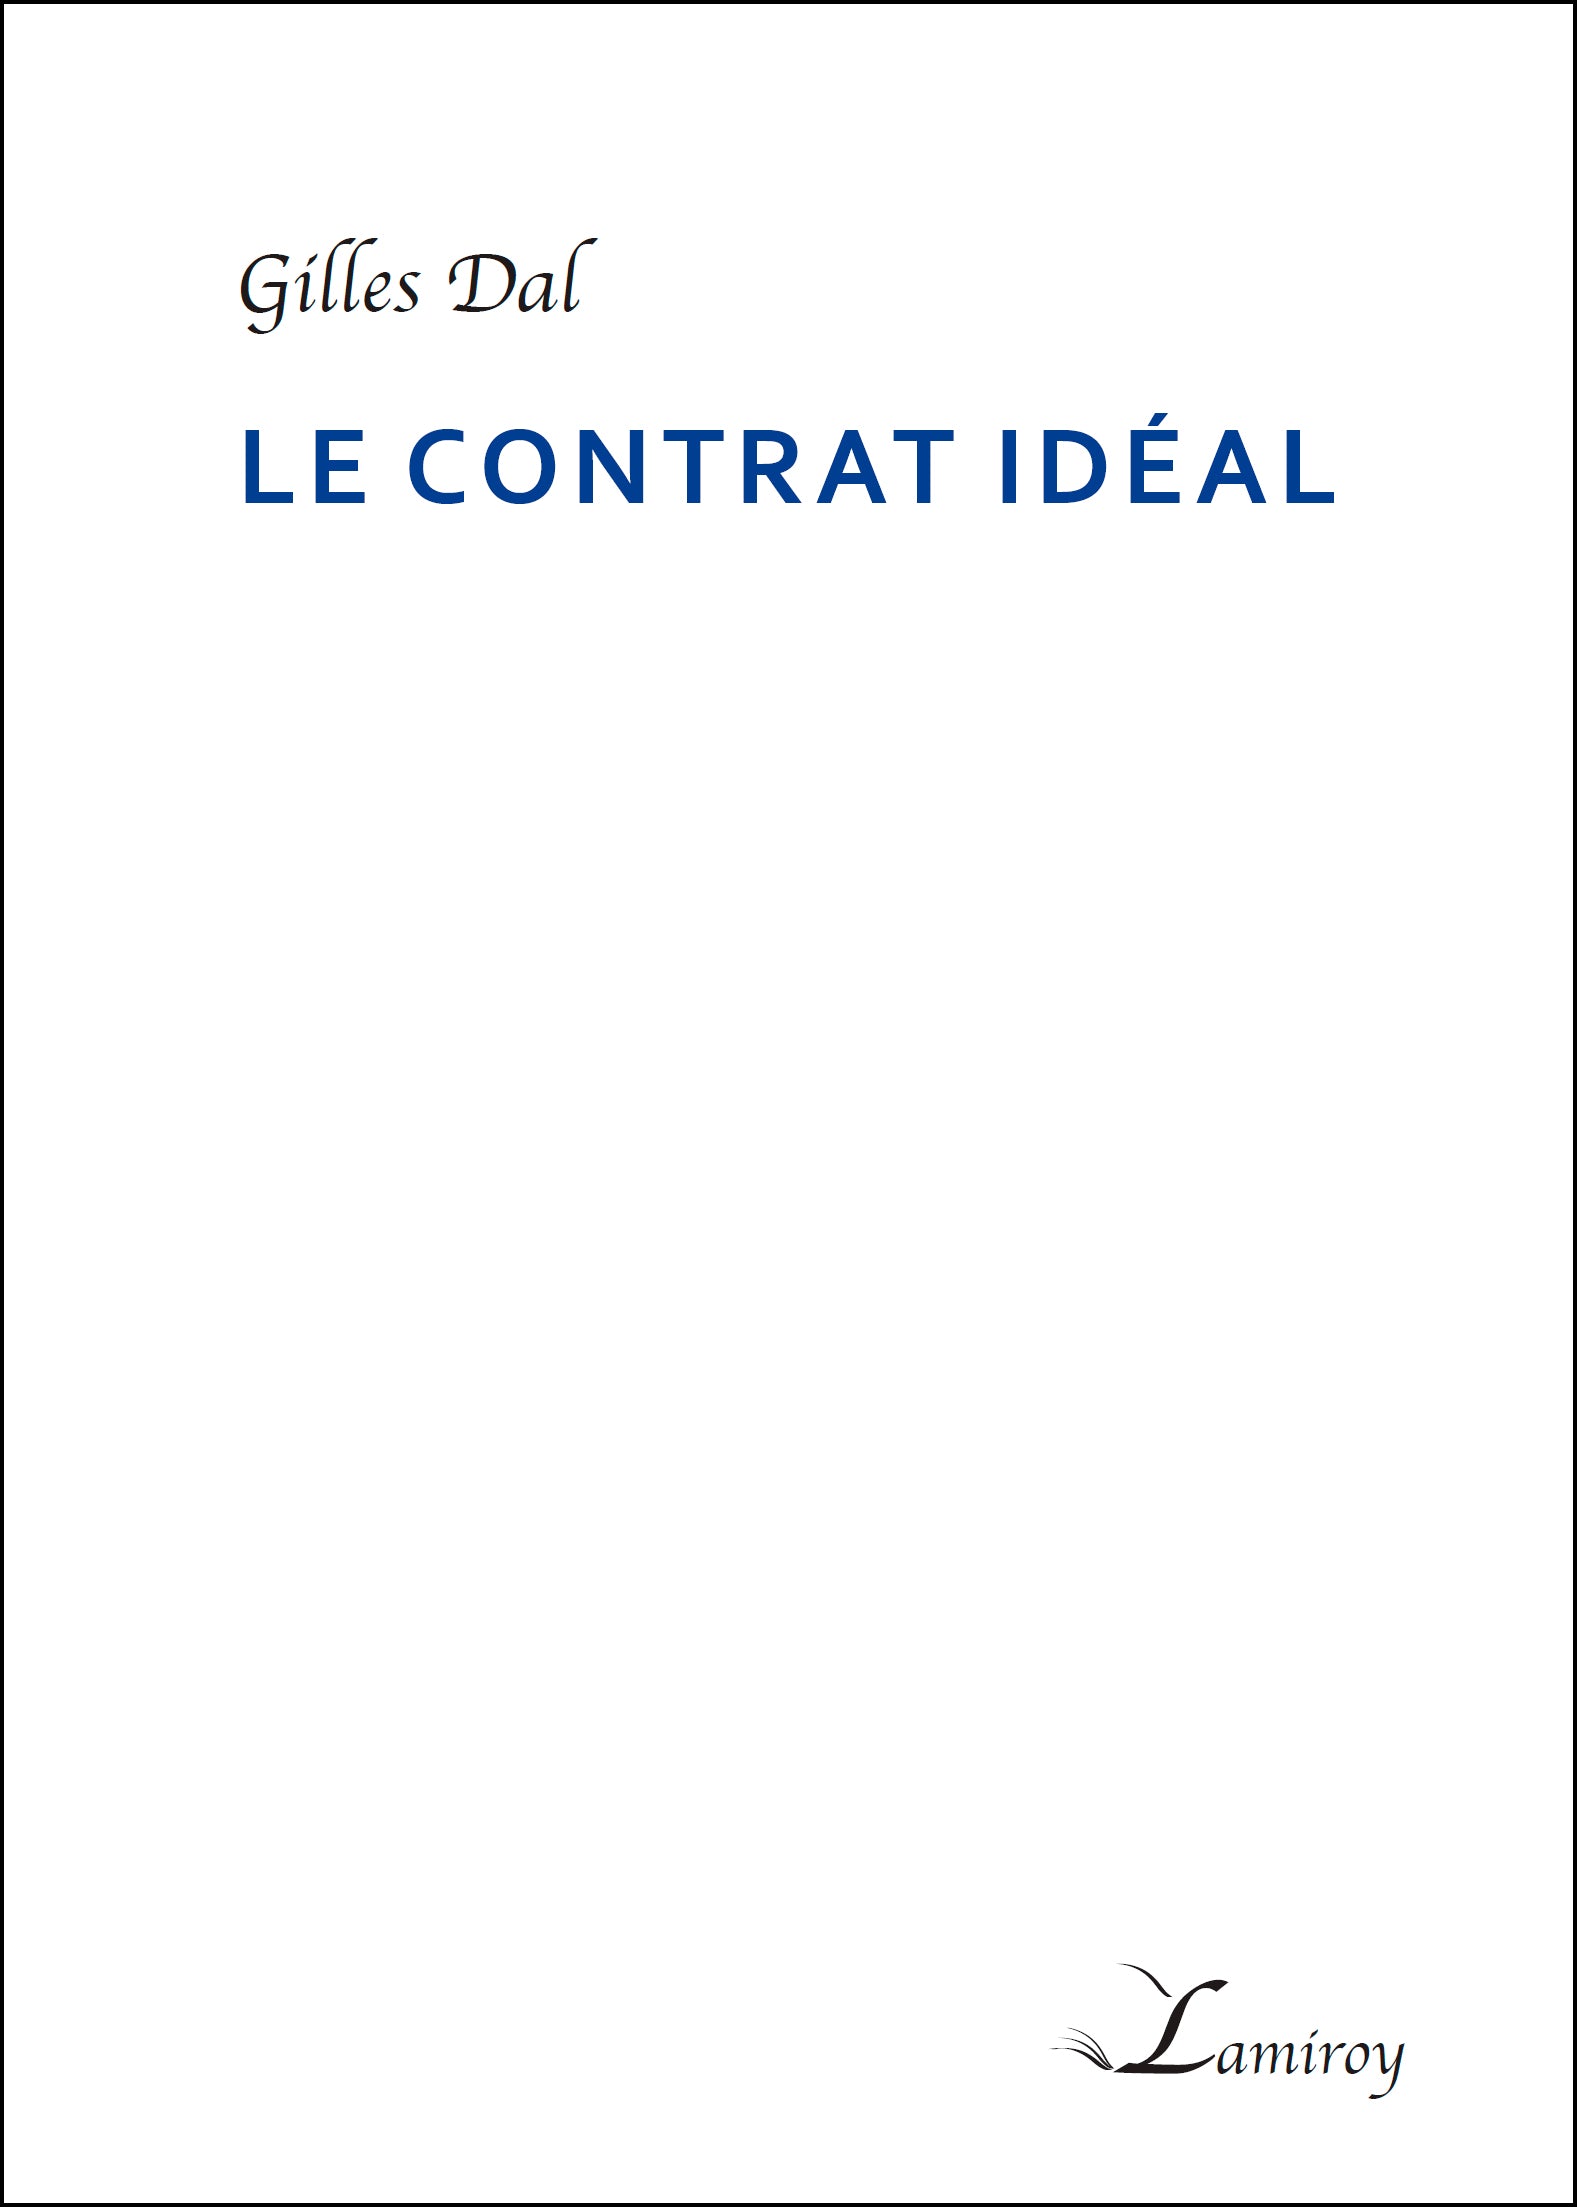 Le contrat idéal